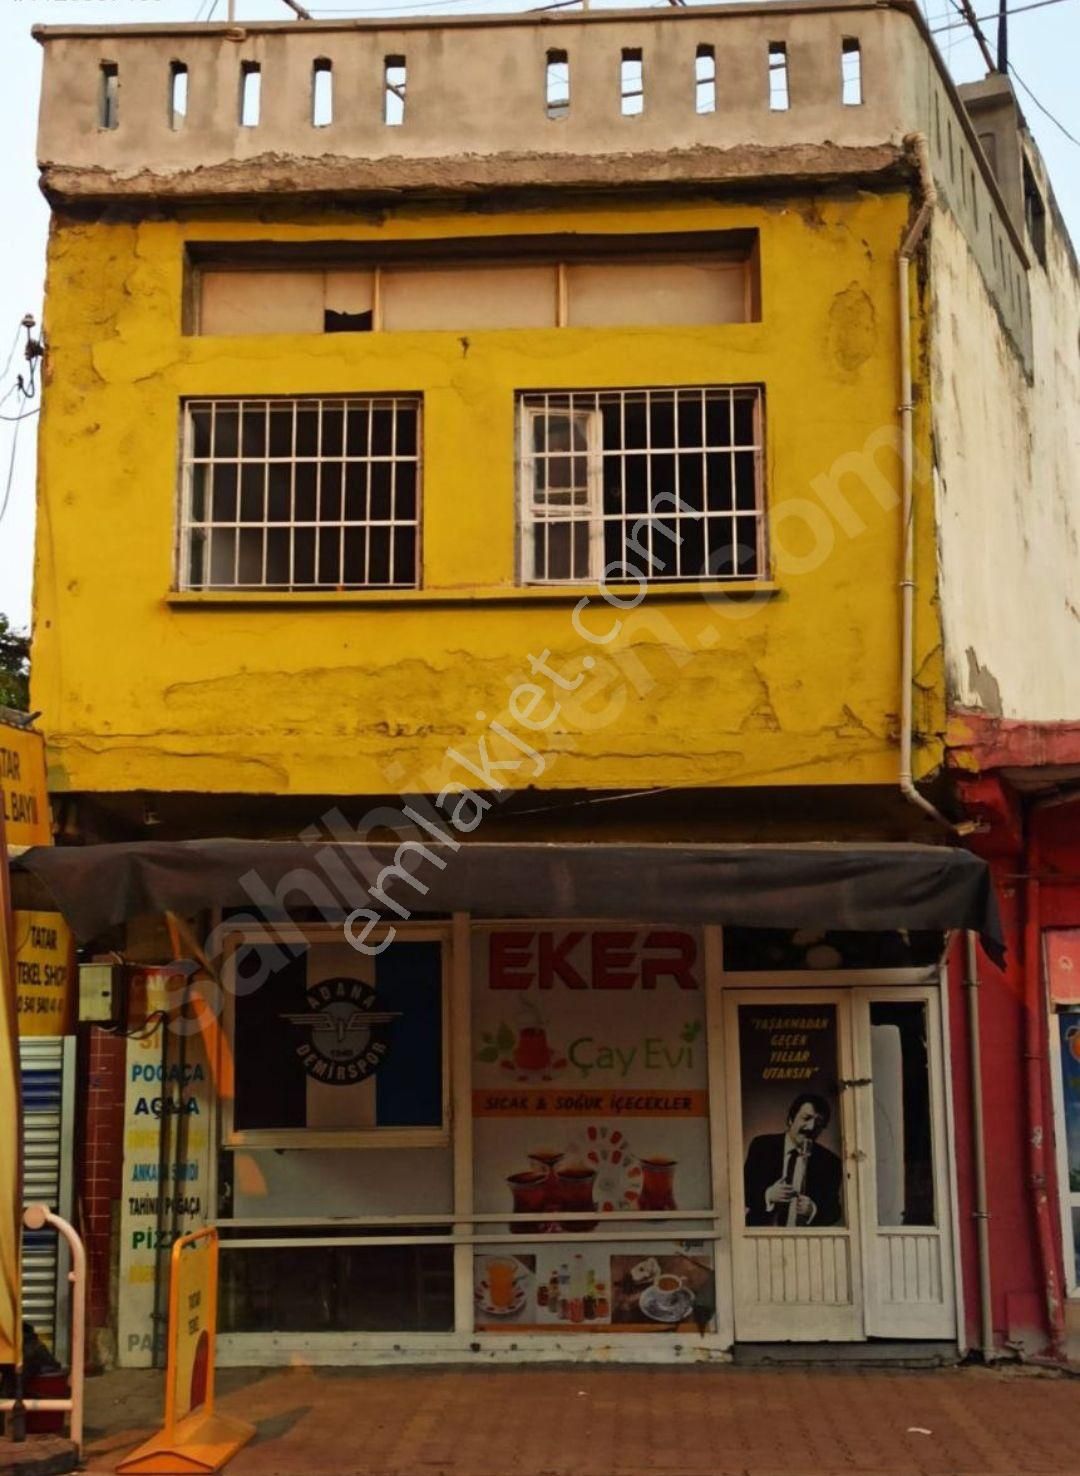 Kozan Şevkiye Satılık Dükkan & Mağaza Adana Caddesinde 2 katlı işyeri